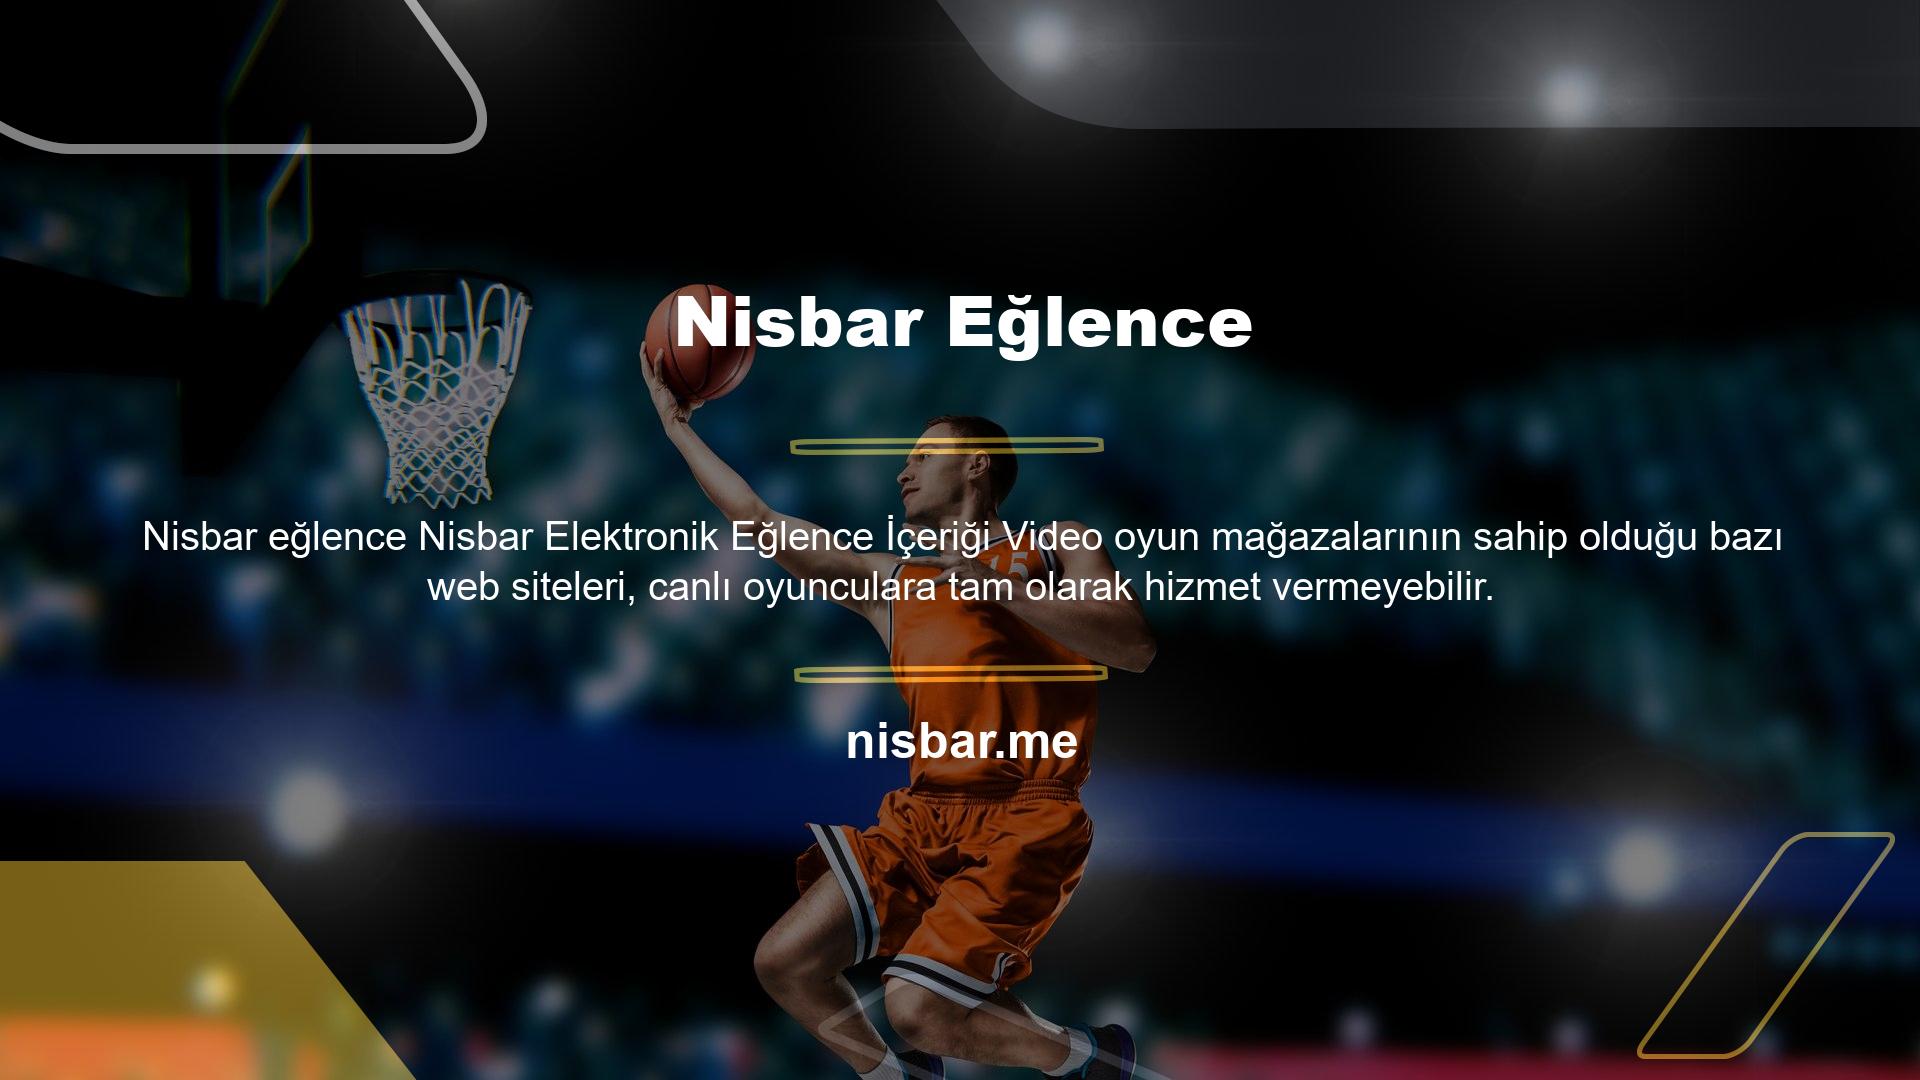 Nisbar online bahis siteleri, kullanıcılara diğer bahis türleri ile aynı yüksek kaliteli ve kazançlı hizmetleri sunar